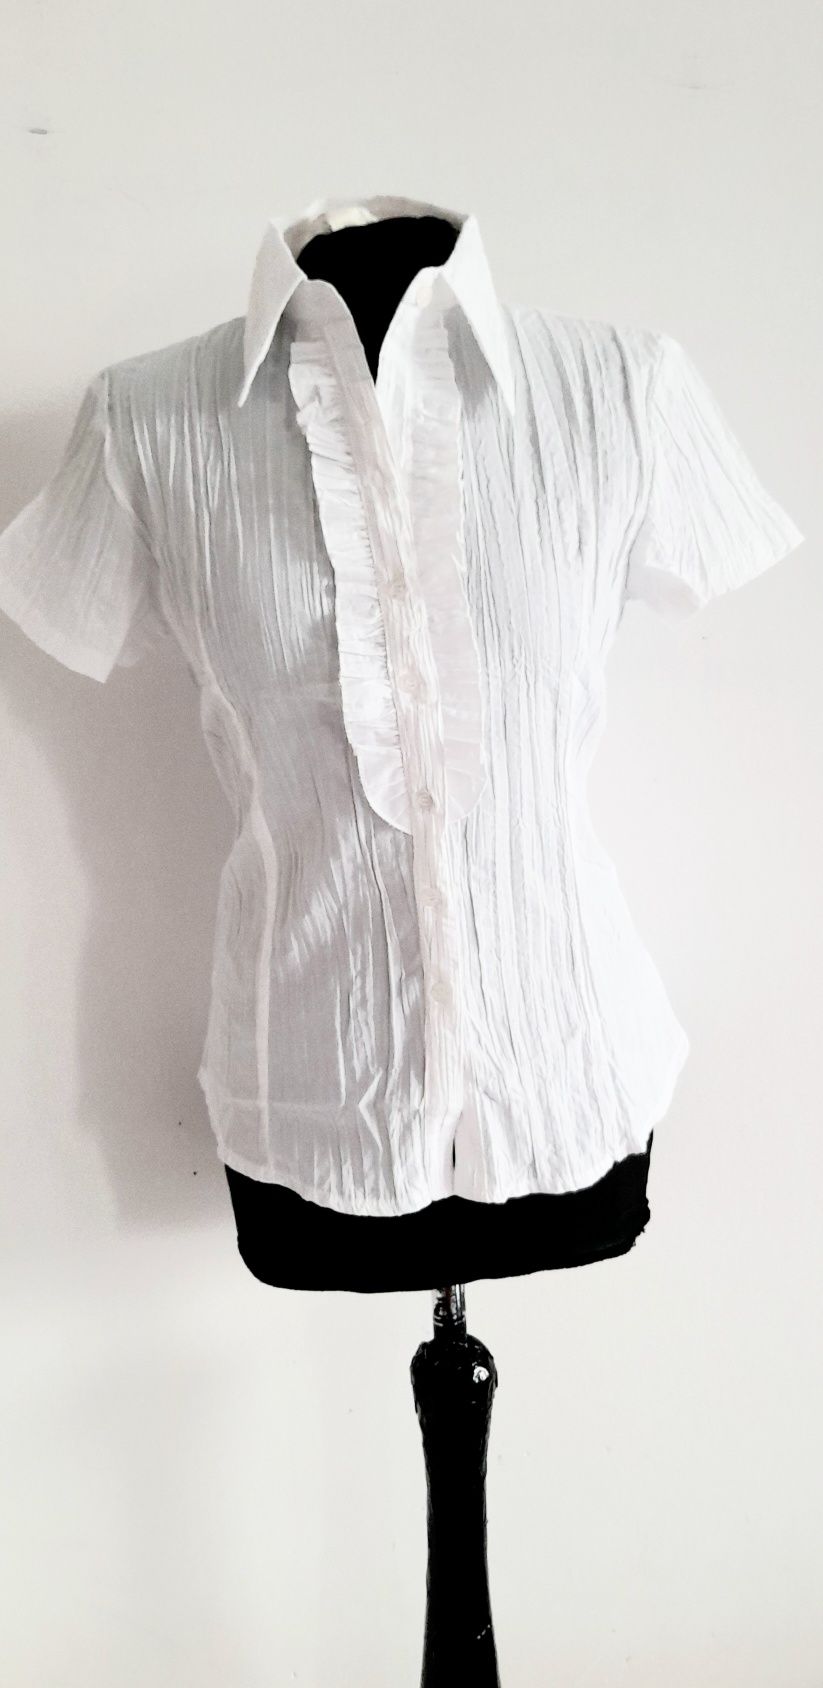 OKAZJA Biała bluzka koszula bawełna wiosna xl 42 xxl